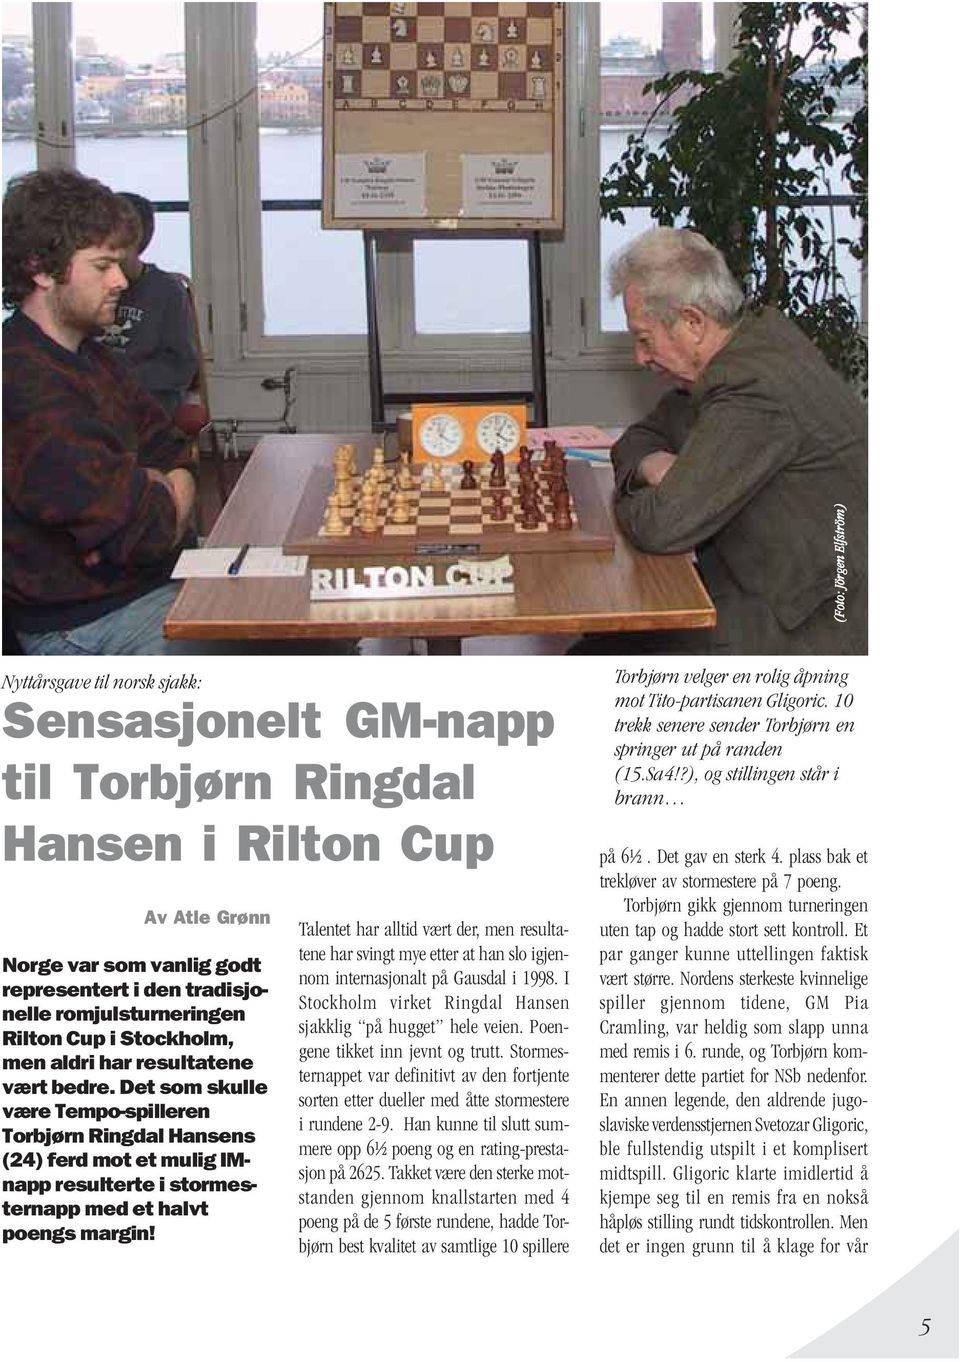 Det som skulle være Tempo-spilleren Torbjørn Ringdal Hansens (24) ferd mot et mulig IMnapp resulterte i stormesternapp med et halvt poengs margin!